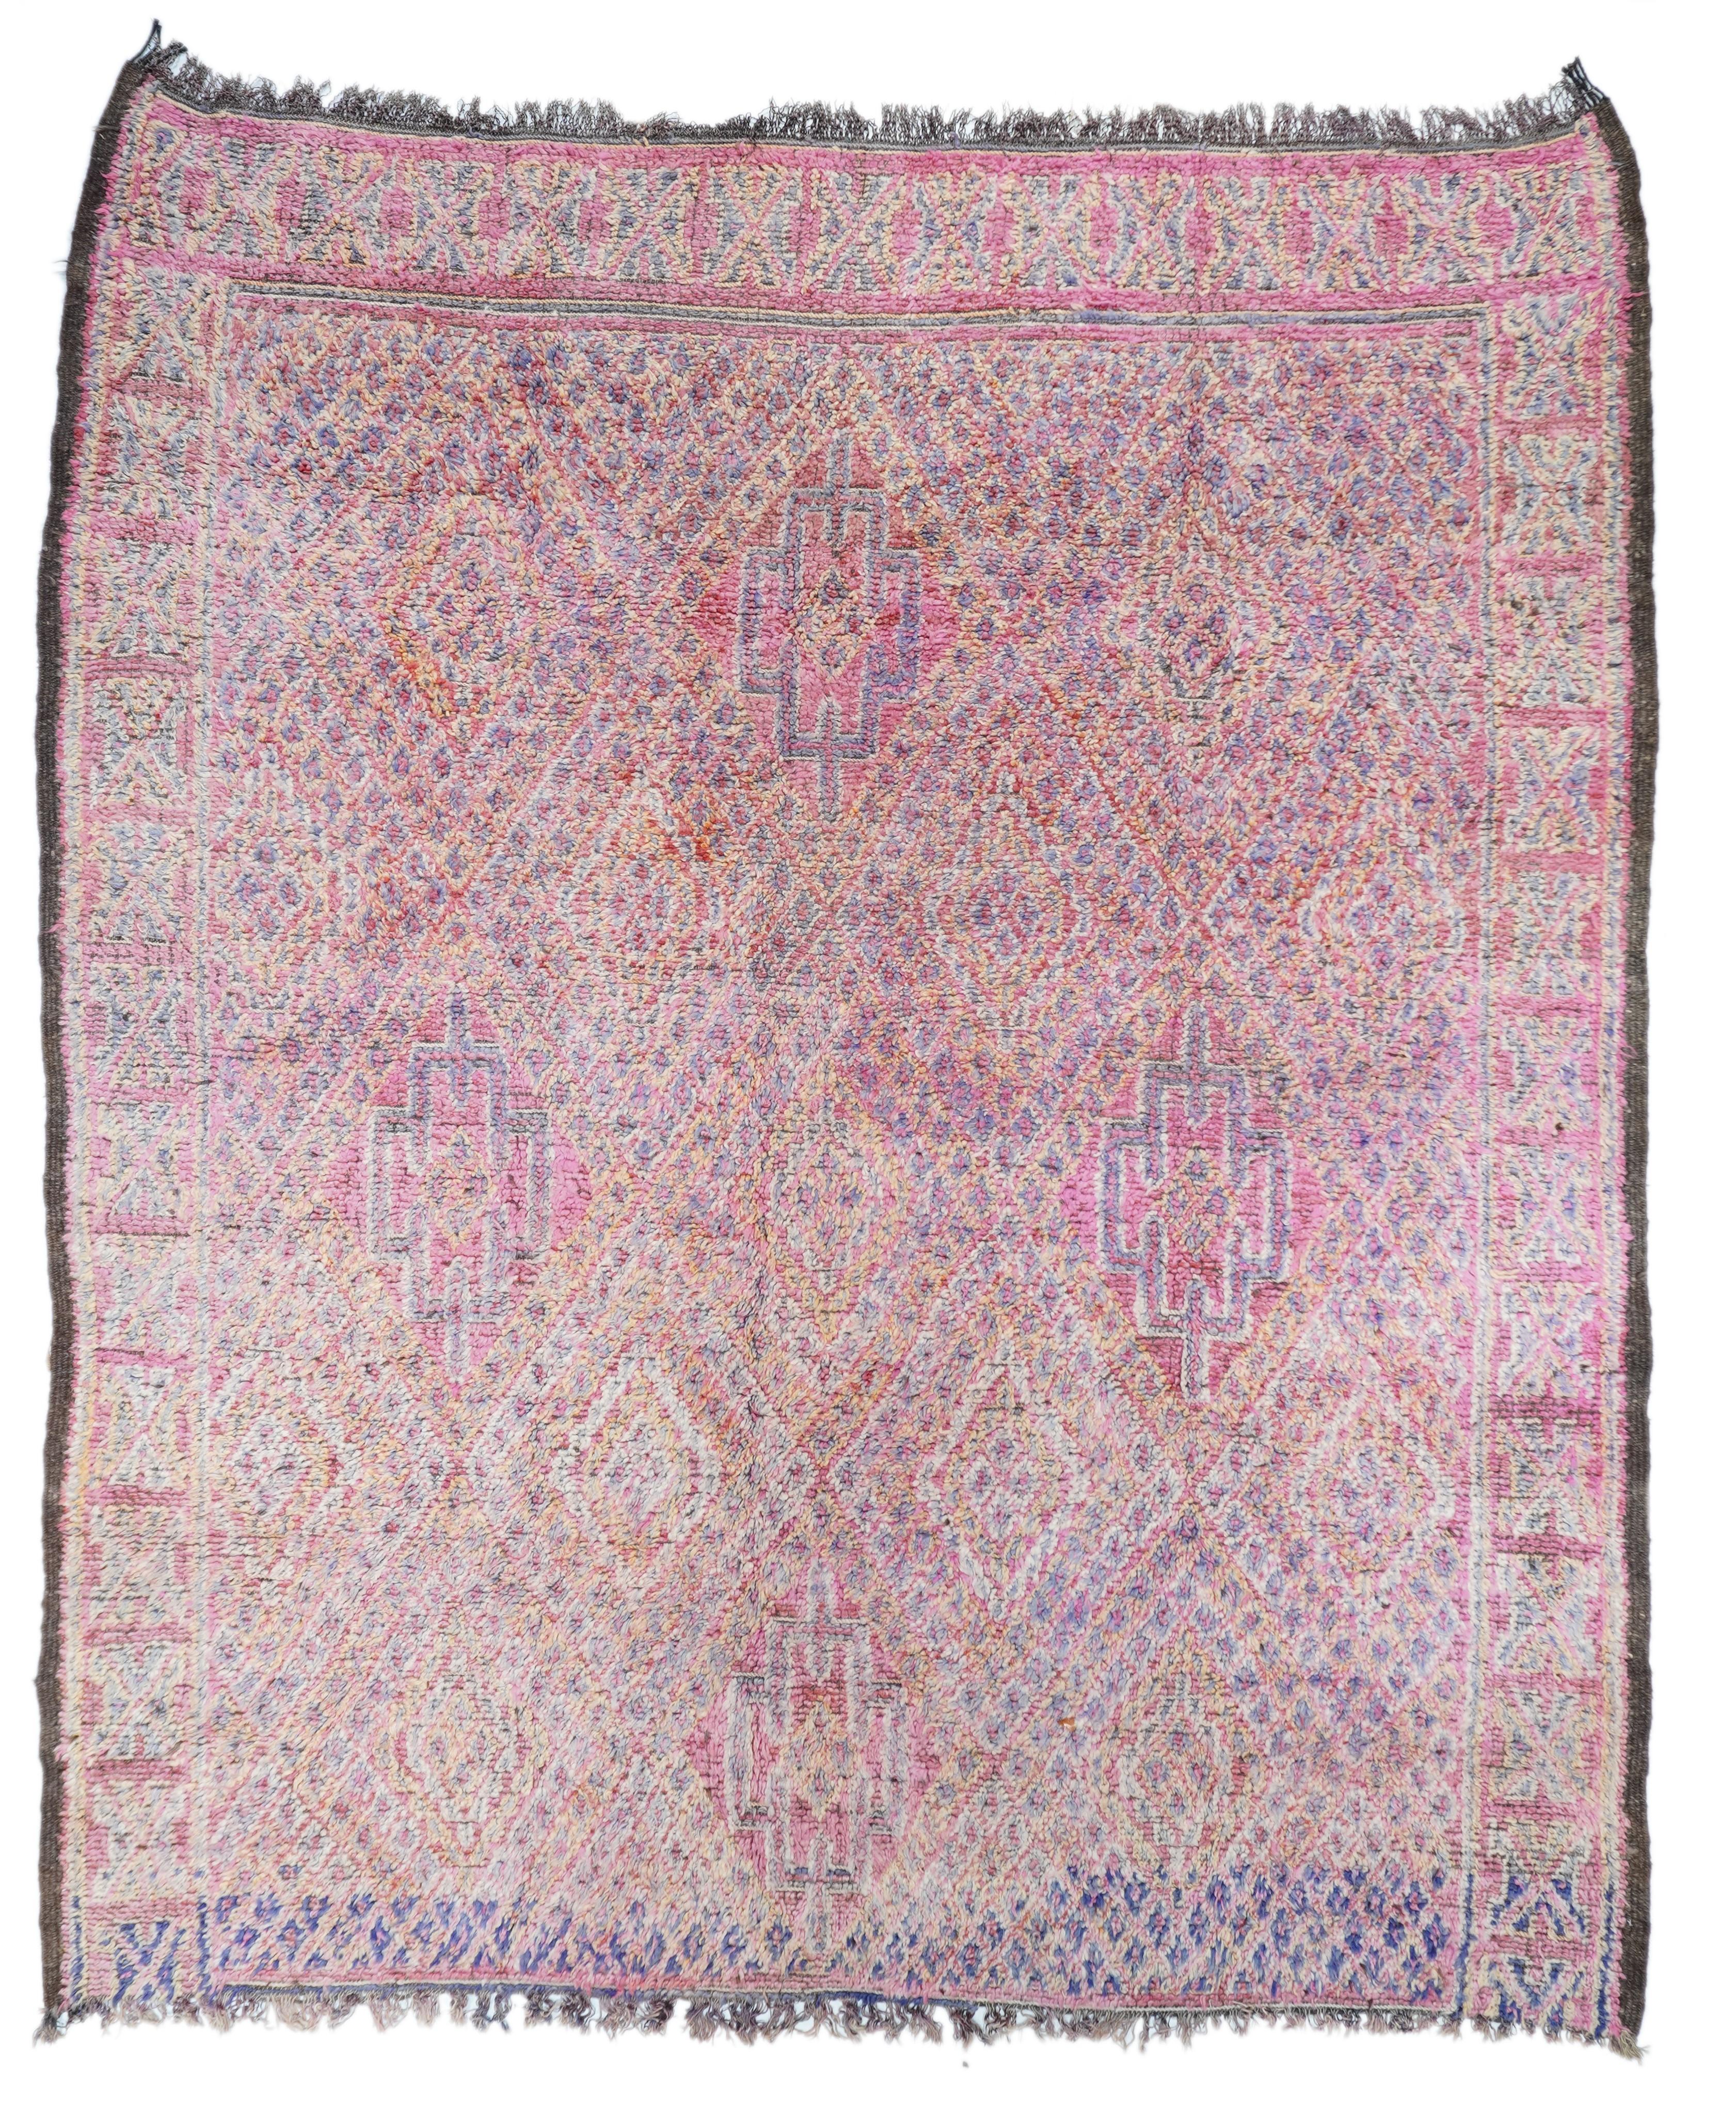 Vintage Moroccan Rug 